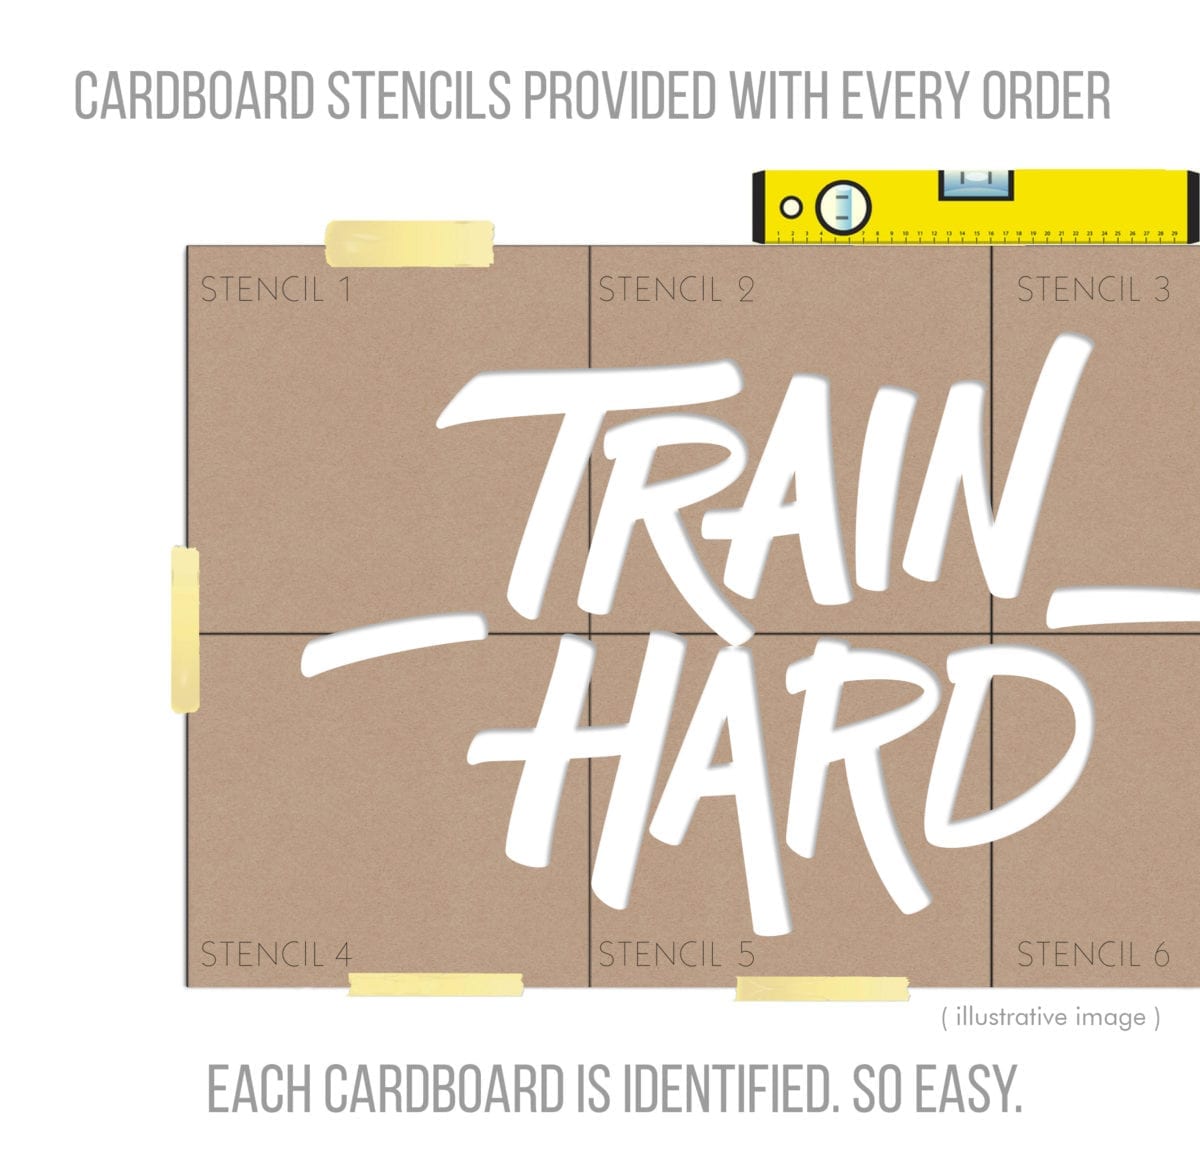 Train Hard Decoração 3d Para Ginásio Casadartpt